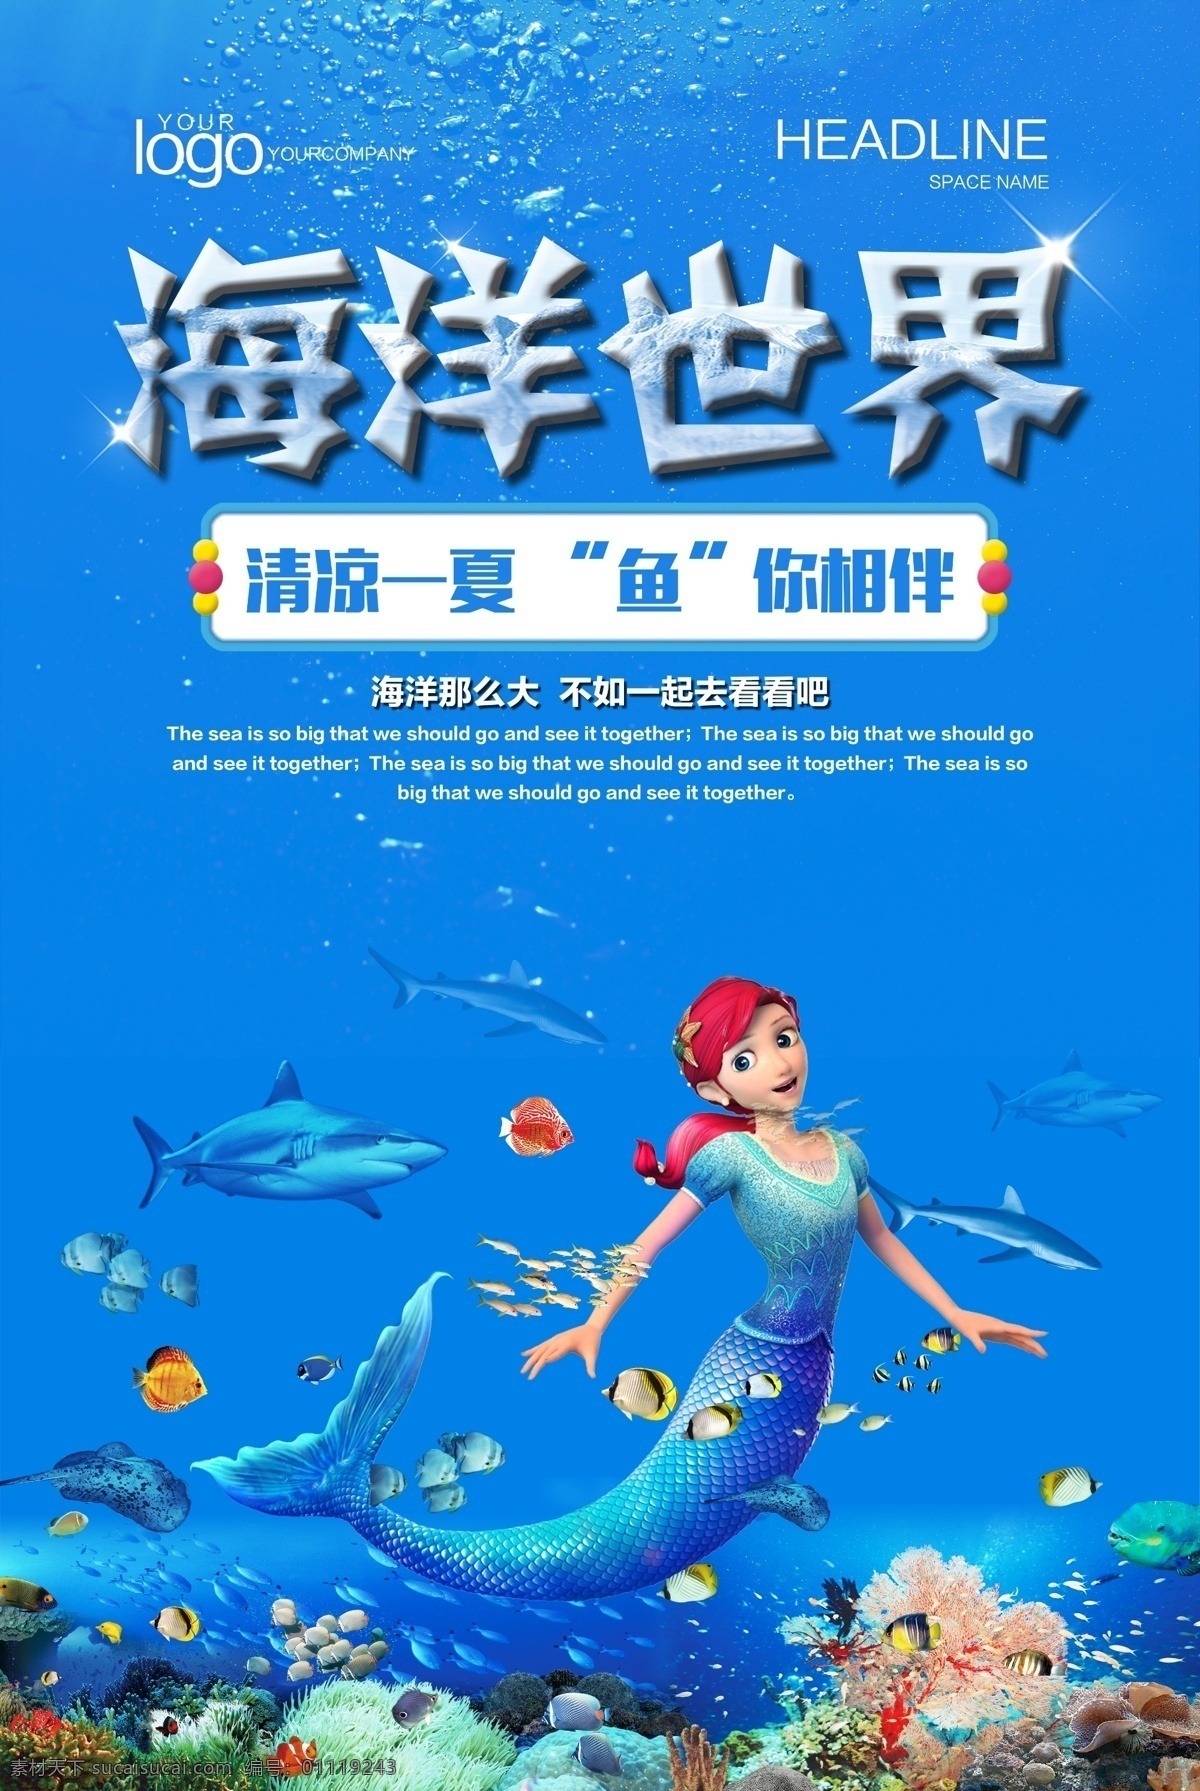 海洋世界 旅游 海报 夏天 蓝色 美人鱼 海底世界